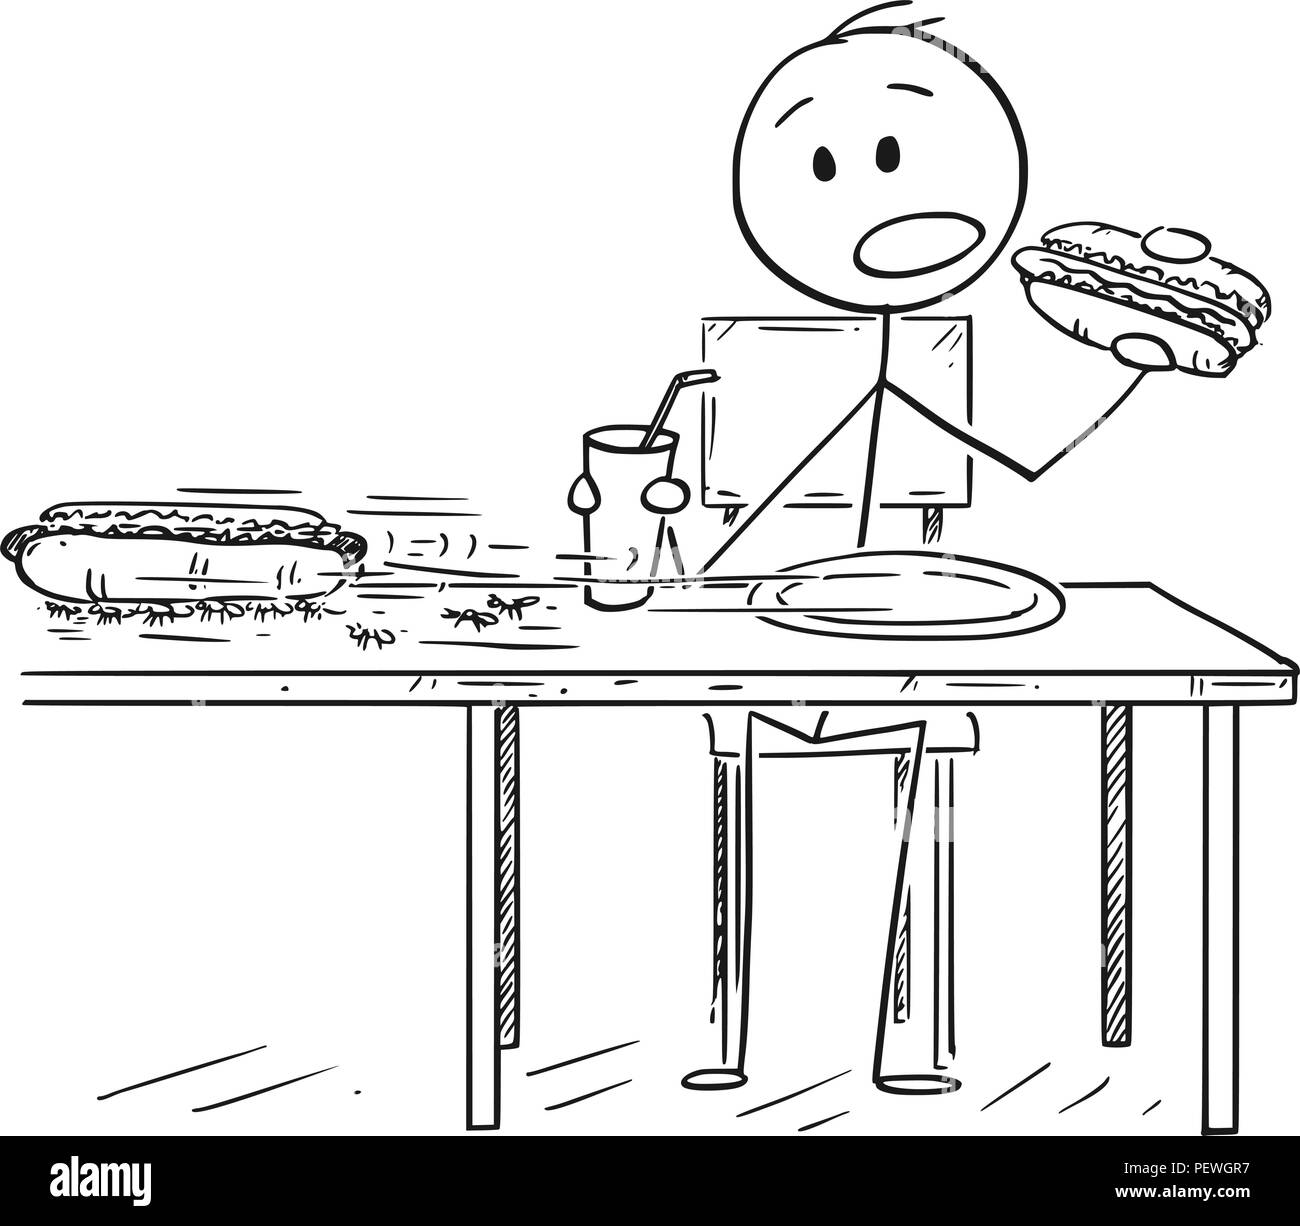 Cartoon von Mann essen Hotdog und trinken Cola, während Ameisen sind Diebstahl zweite Hotdog Stock Vektor